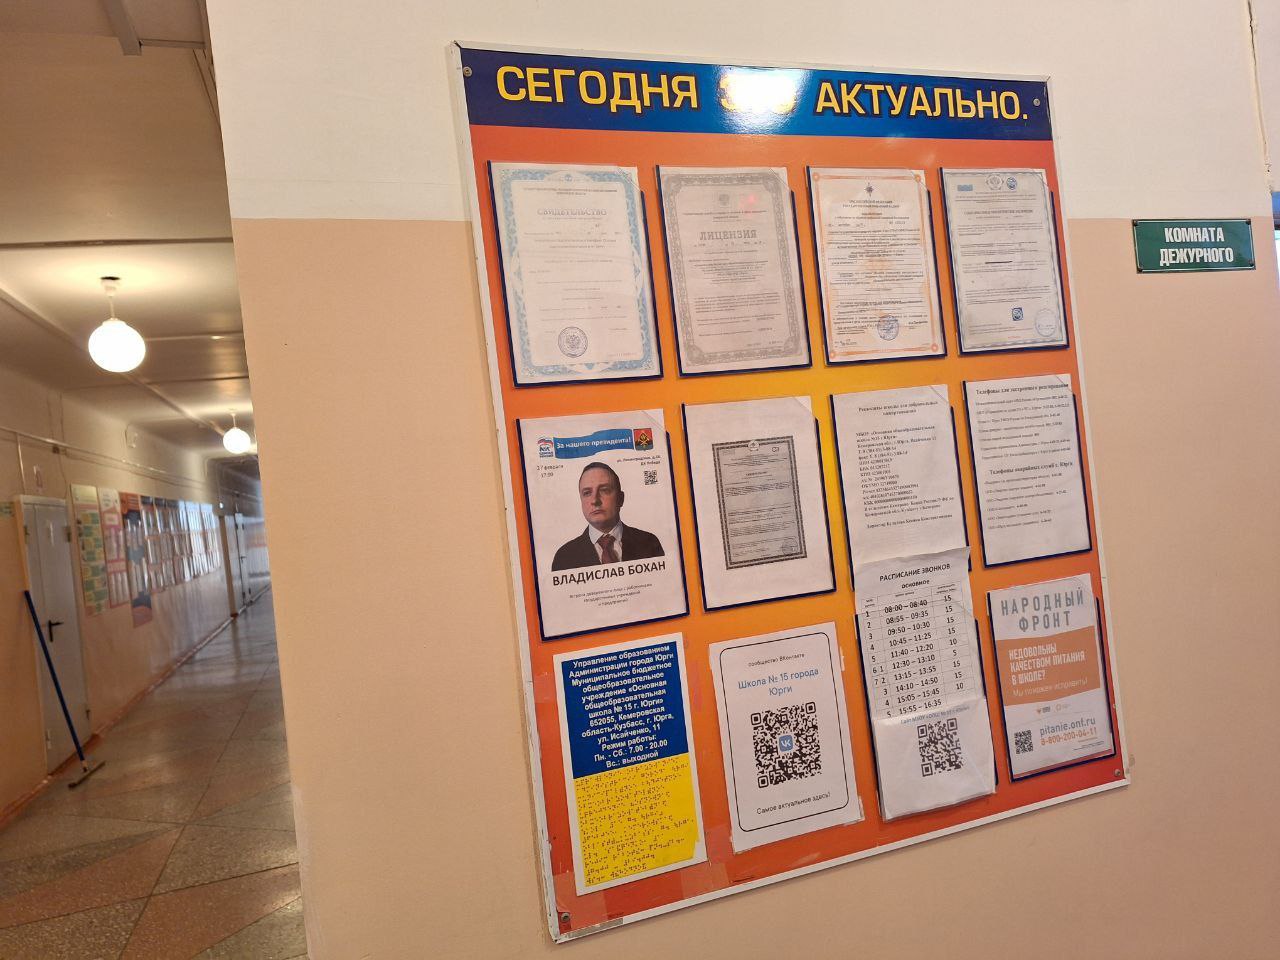 Акционист Бохан стал "доверенным лицом Путина" и потроллил российских учителей